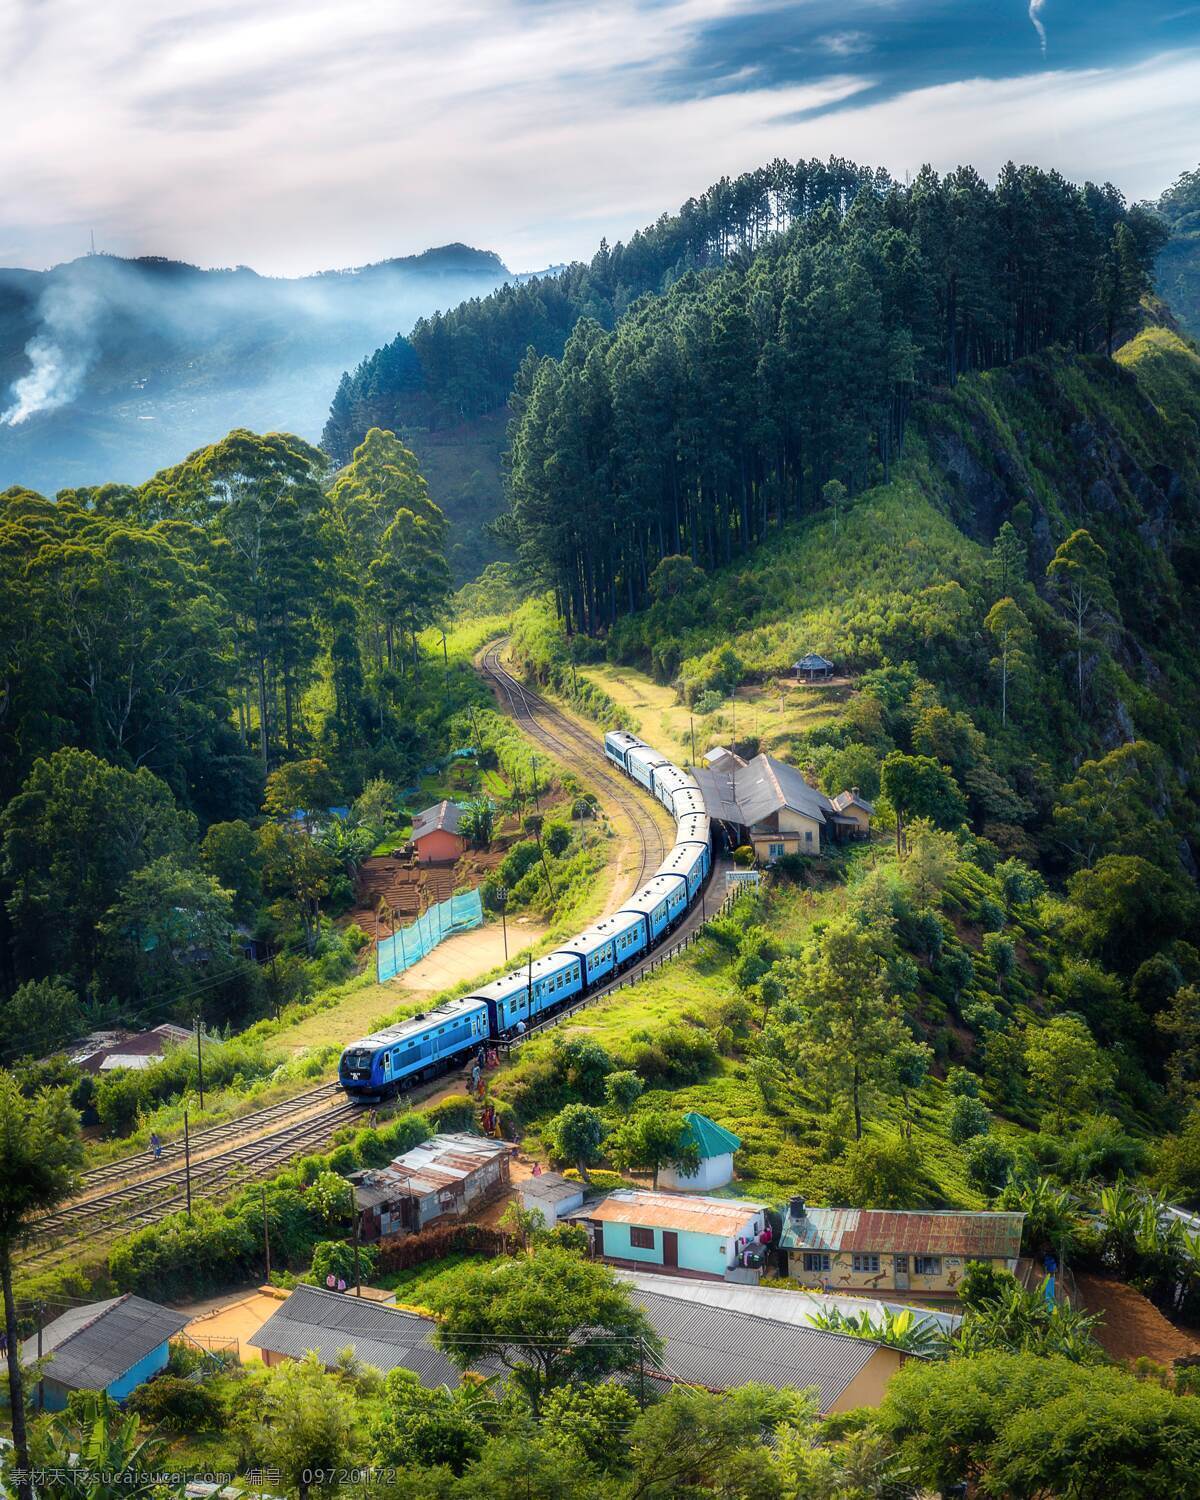 户外风景图片 风景 绚丽 云彩 蓝天 火车 海报 背景 旅游摄影 人文景观